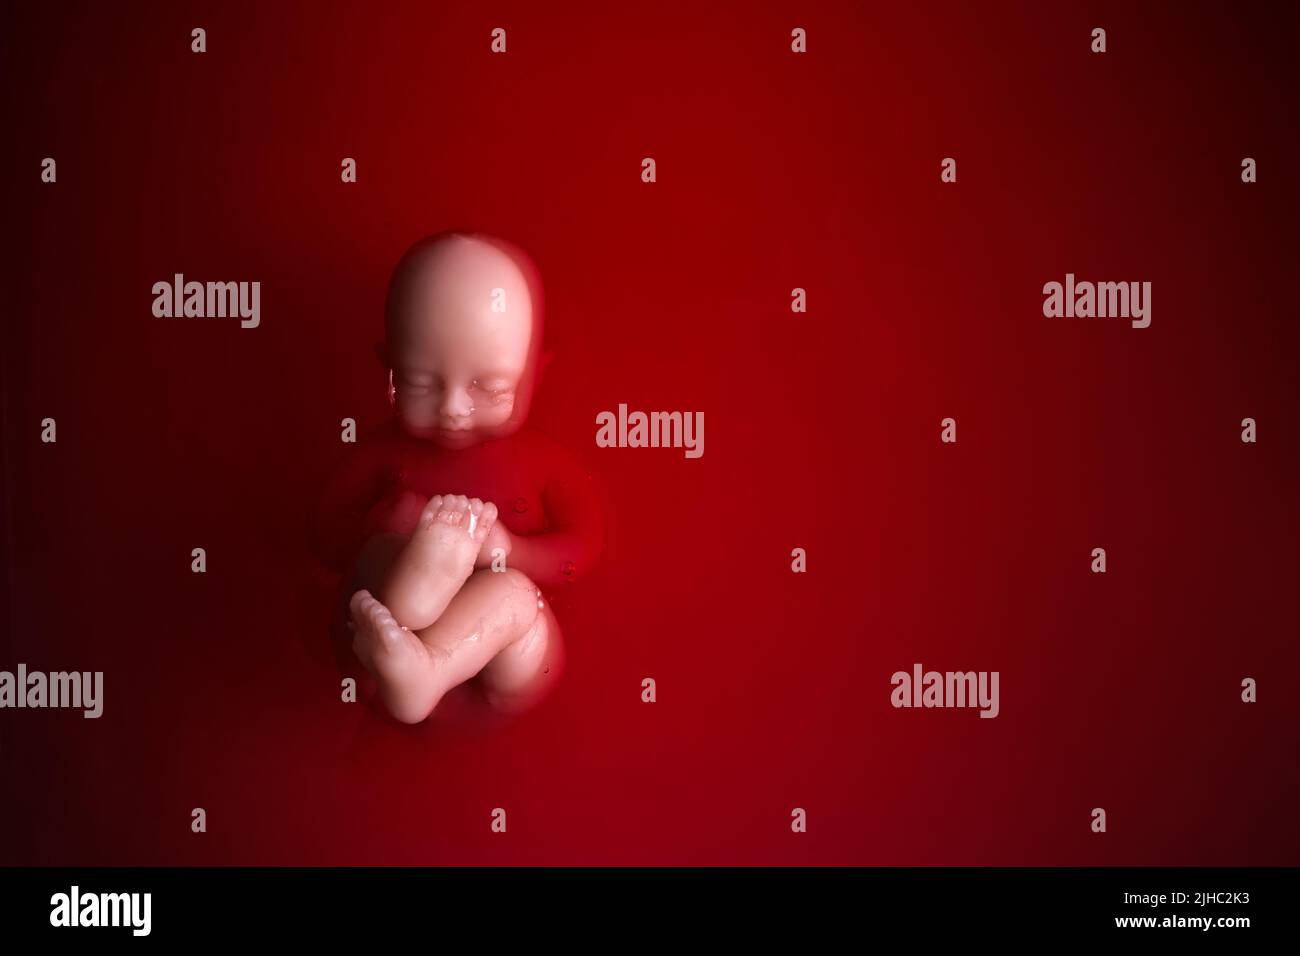 Abtreibungskonzept. Babypuppe im roten Blut sieht aus wie eine Abtreibung. Stockfoto